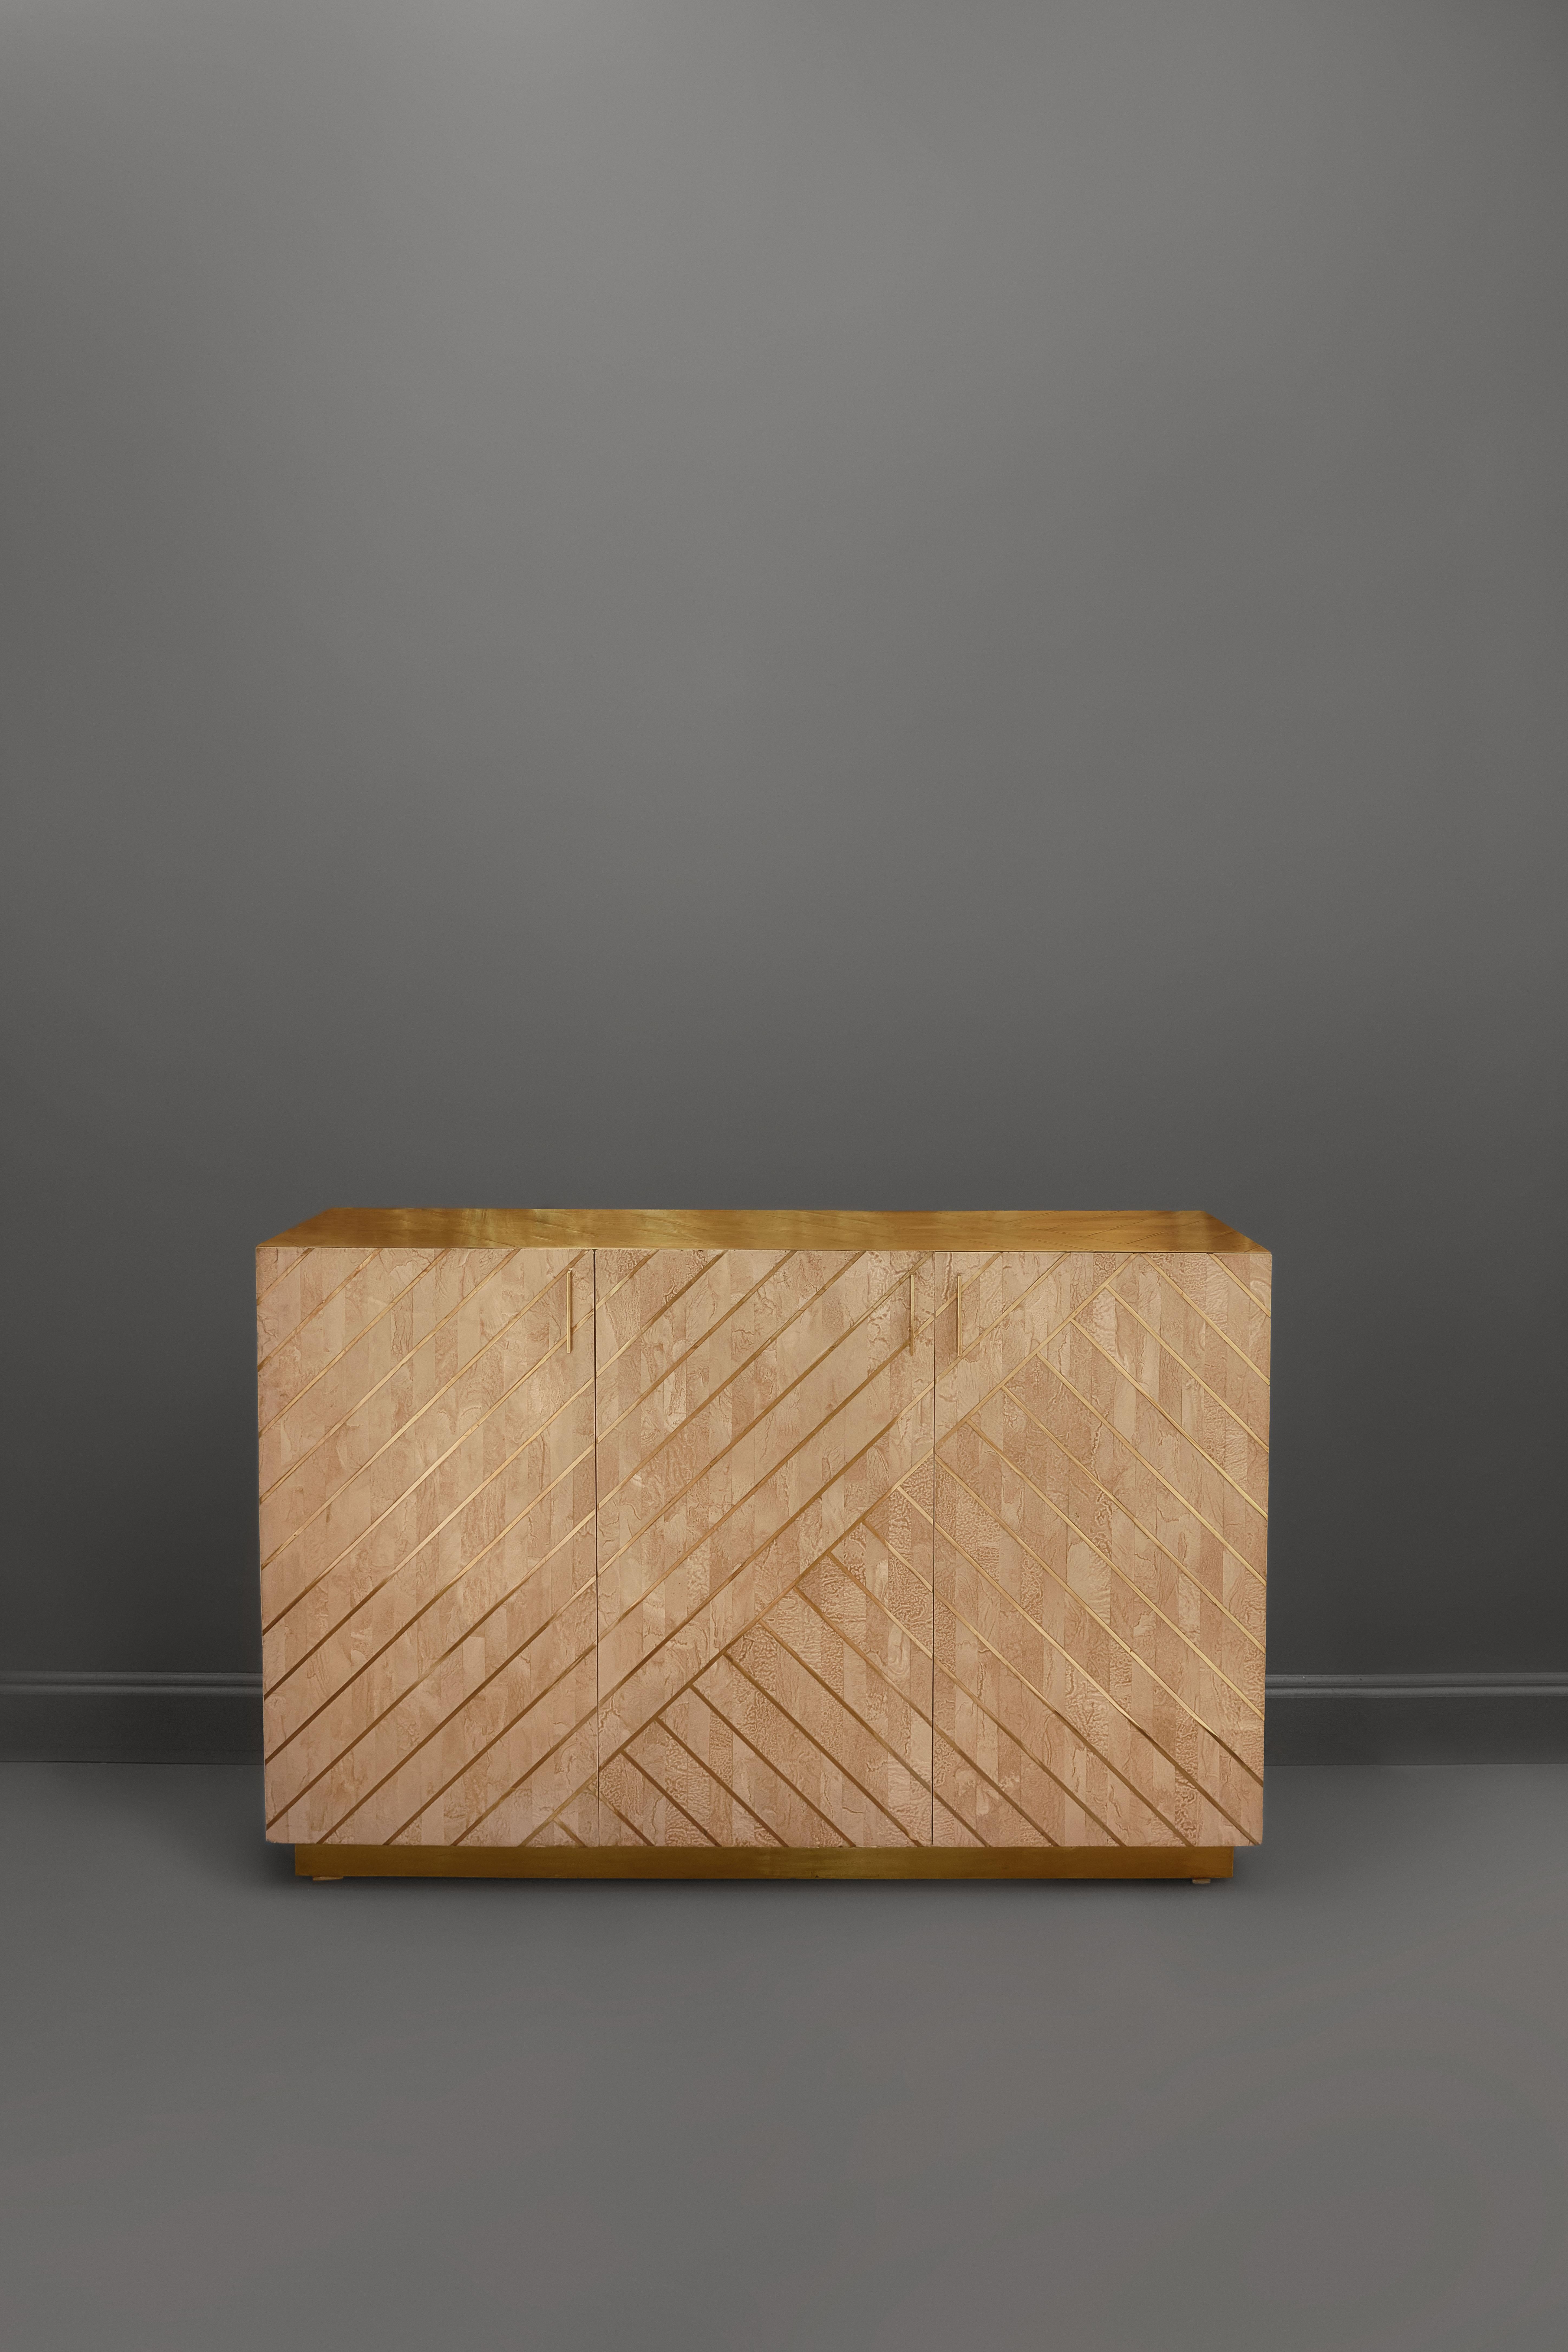 Nesso Beige and PinkSmall Sideboard with Brass Inlay by Matteo Cibic est un magnifique meuble en résine nacrée avec des incrustations géométriques en laiton et un luxueux plateau en laiton. Des tailles personnalisées sont disponibles sur demande. Il